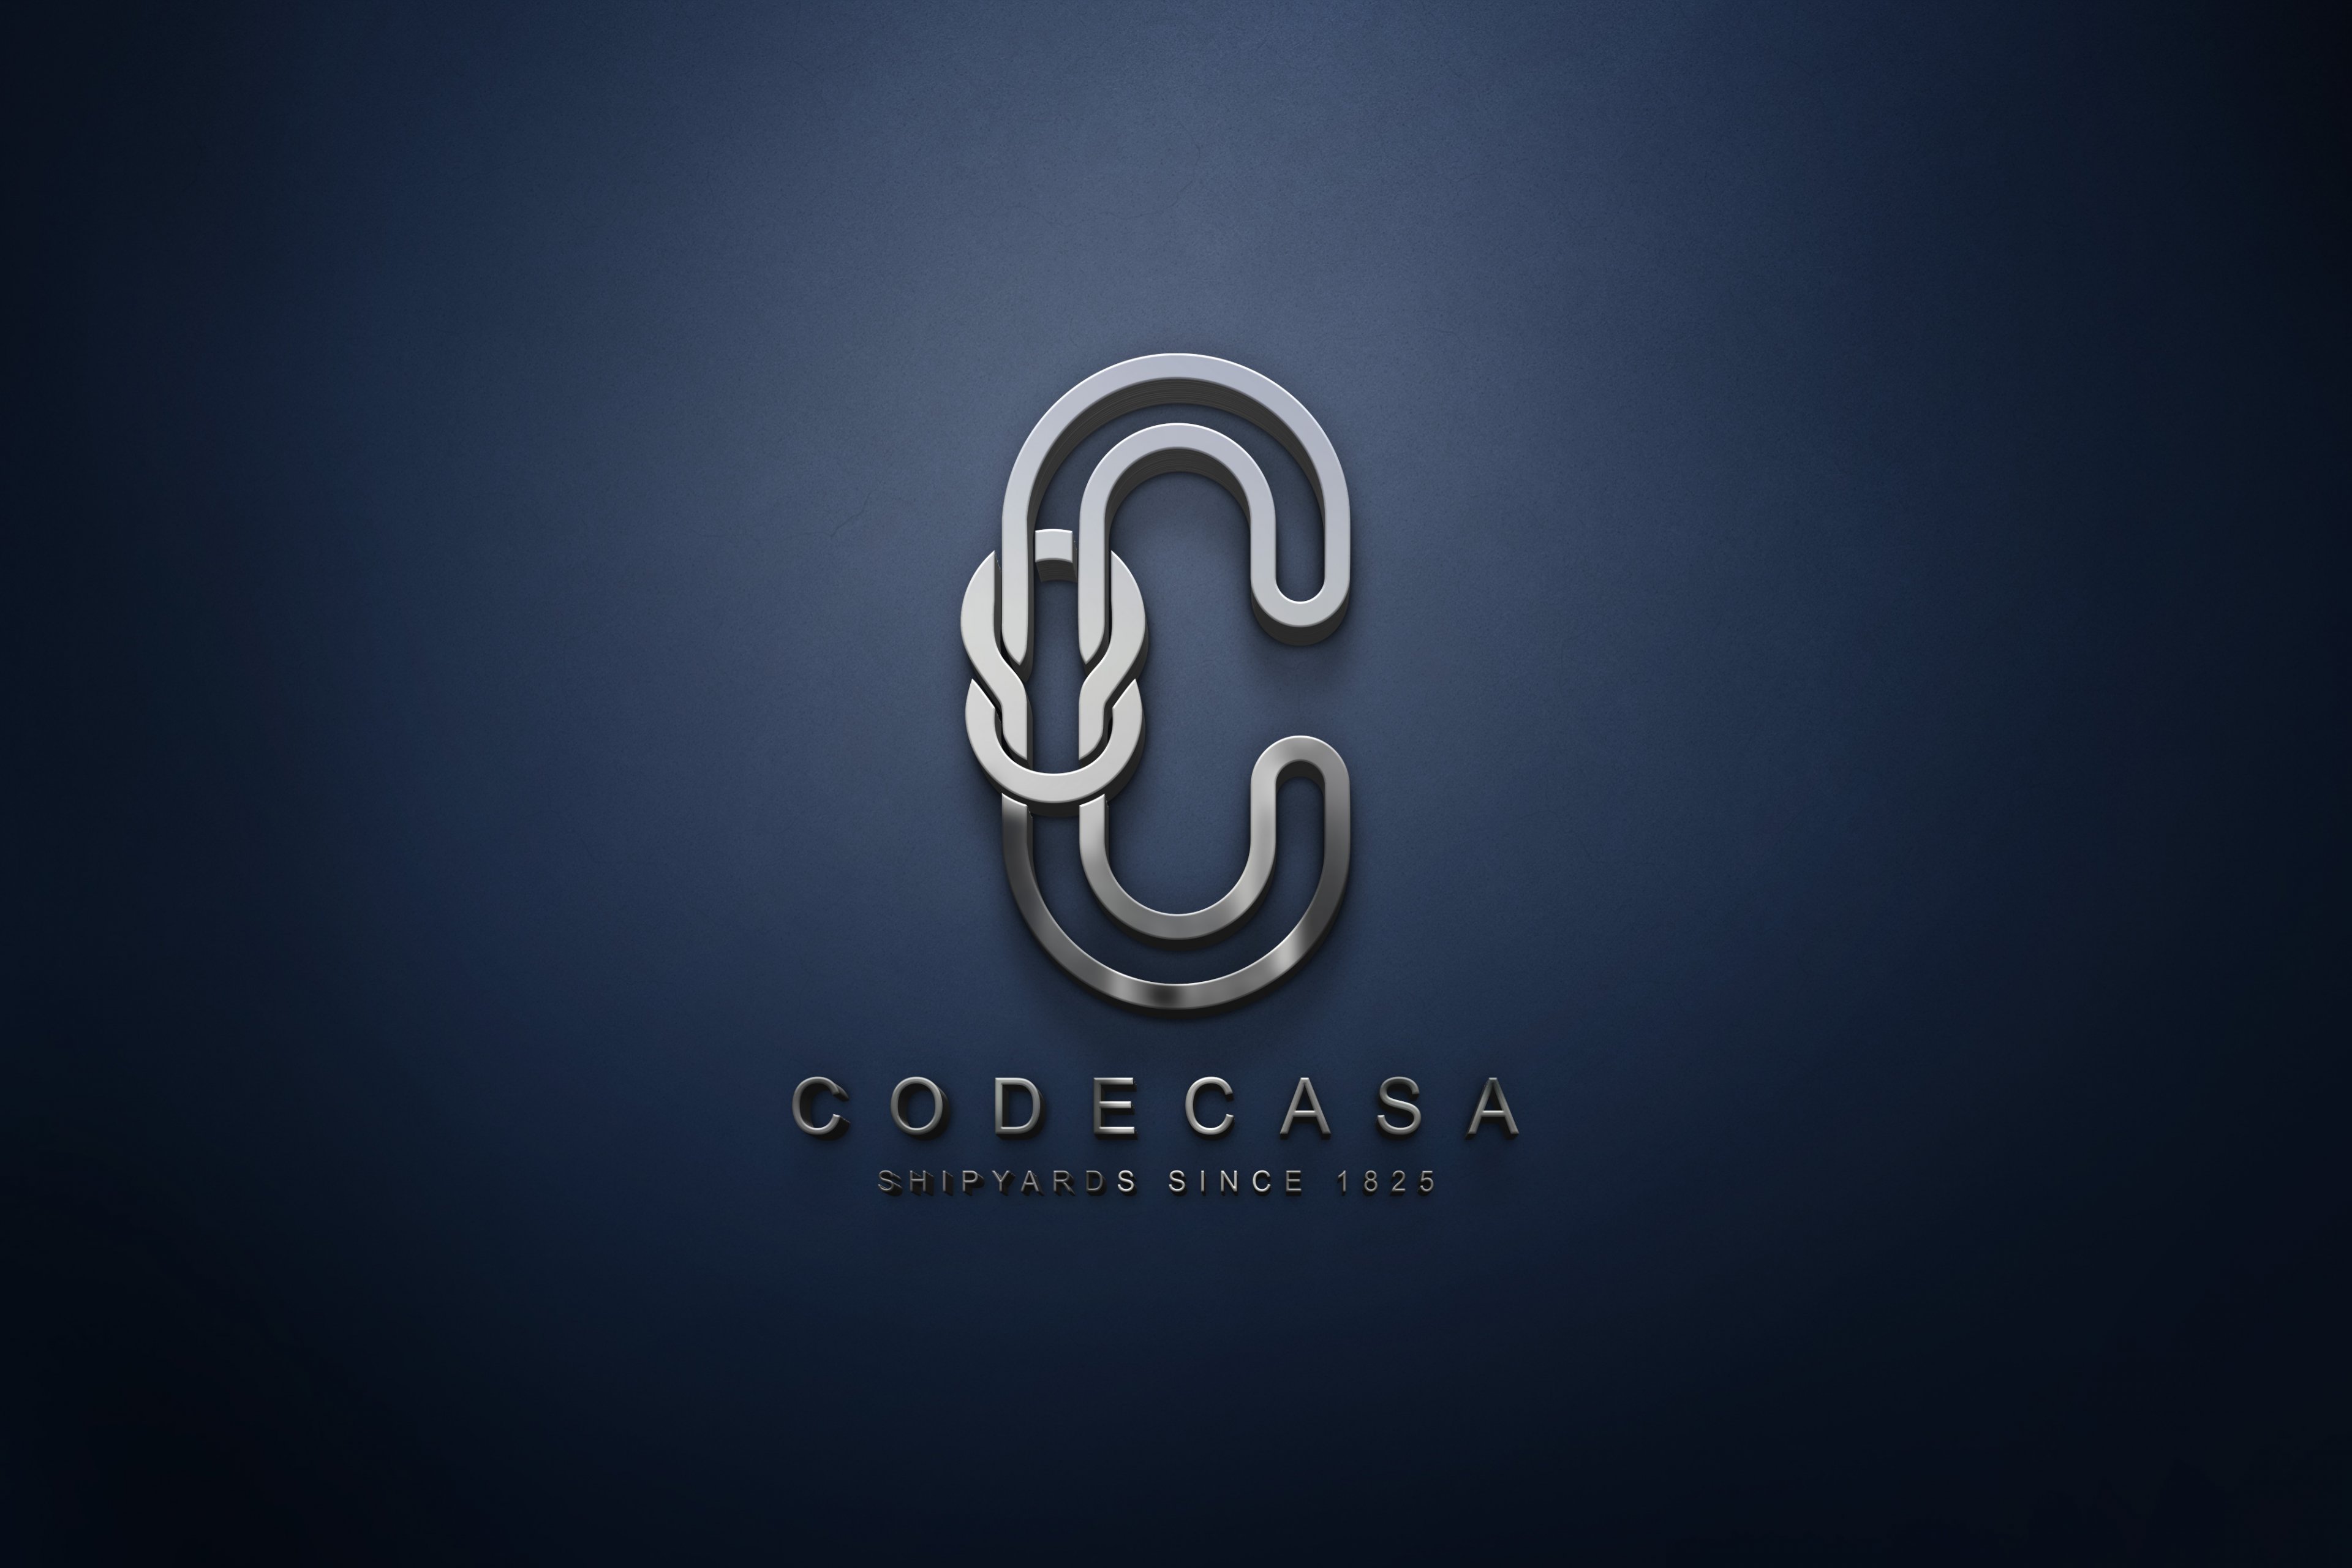 Codecasa-logo-metallic-zaki